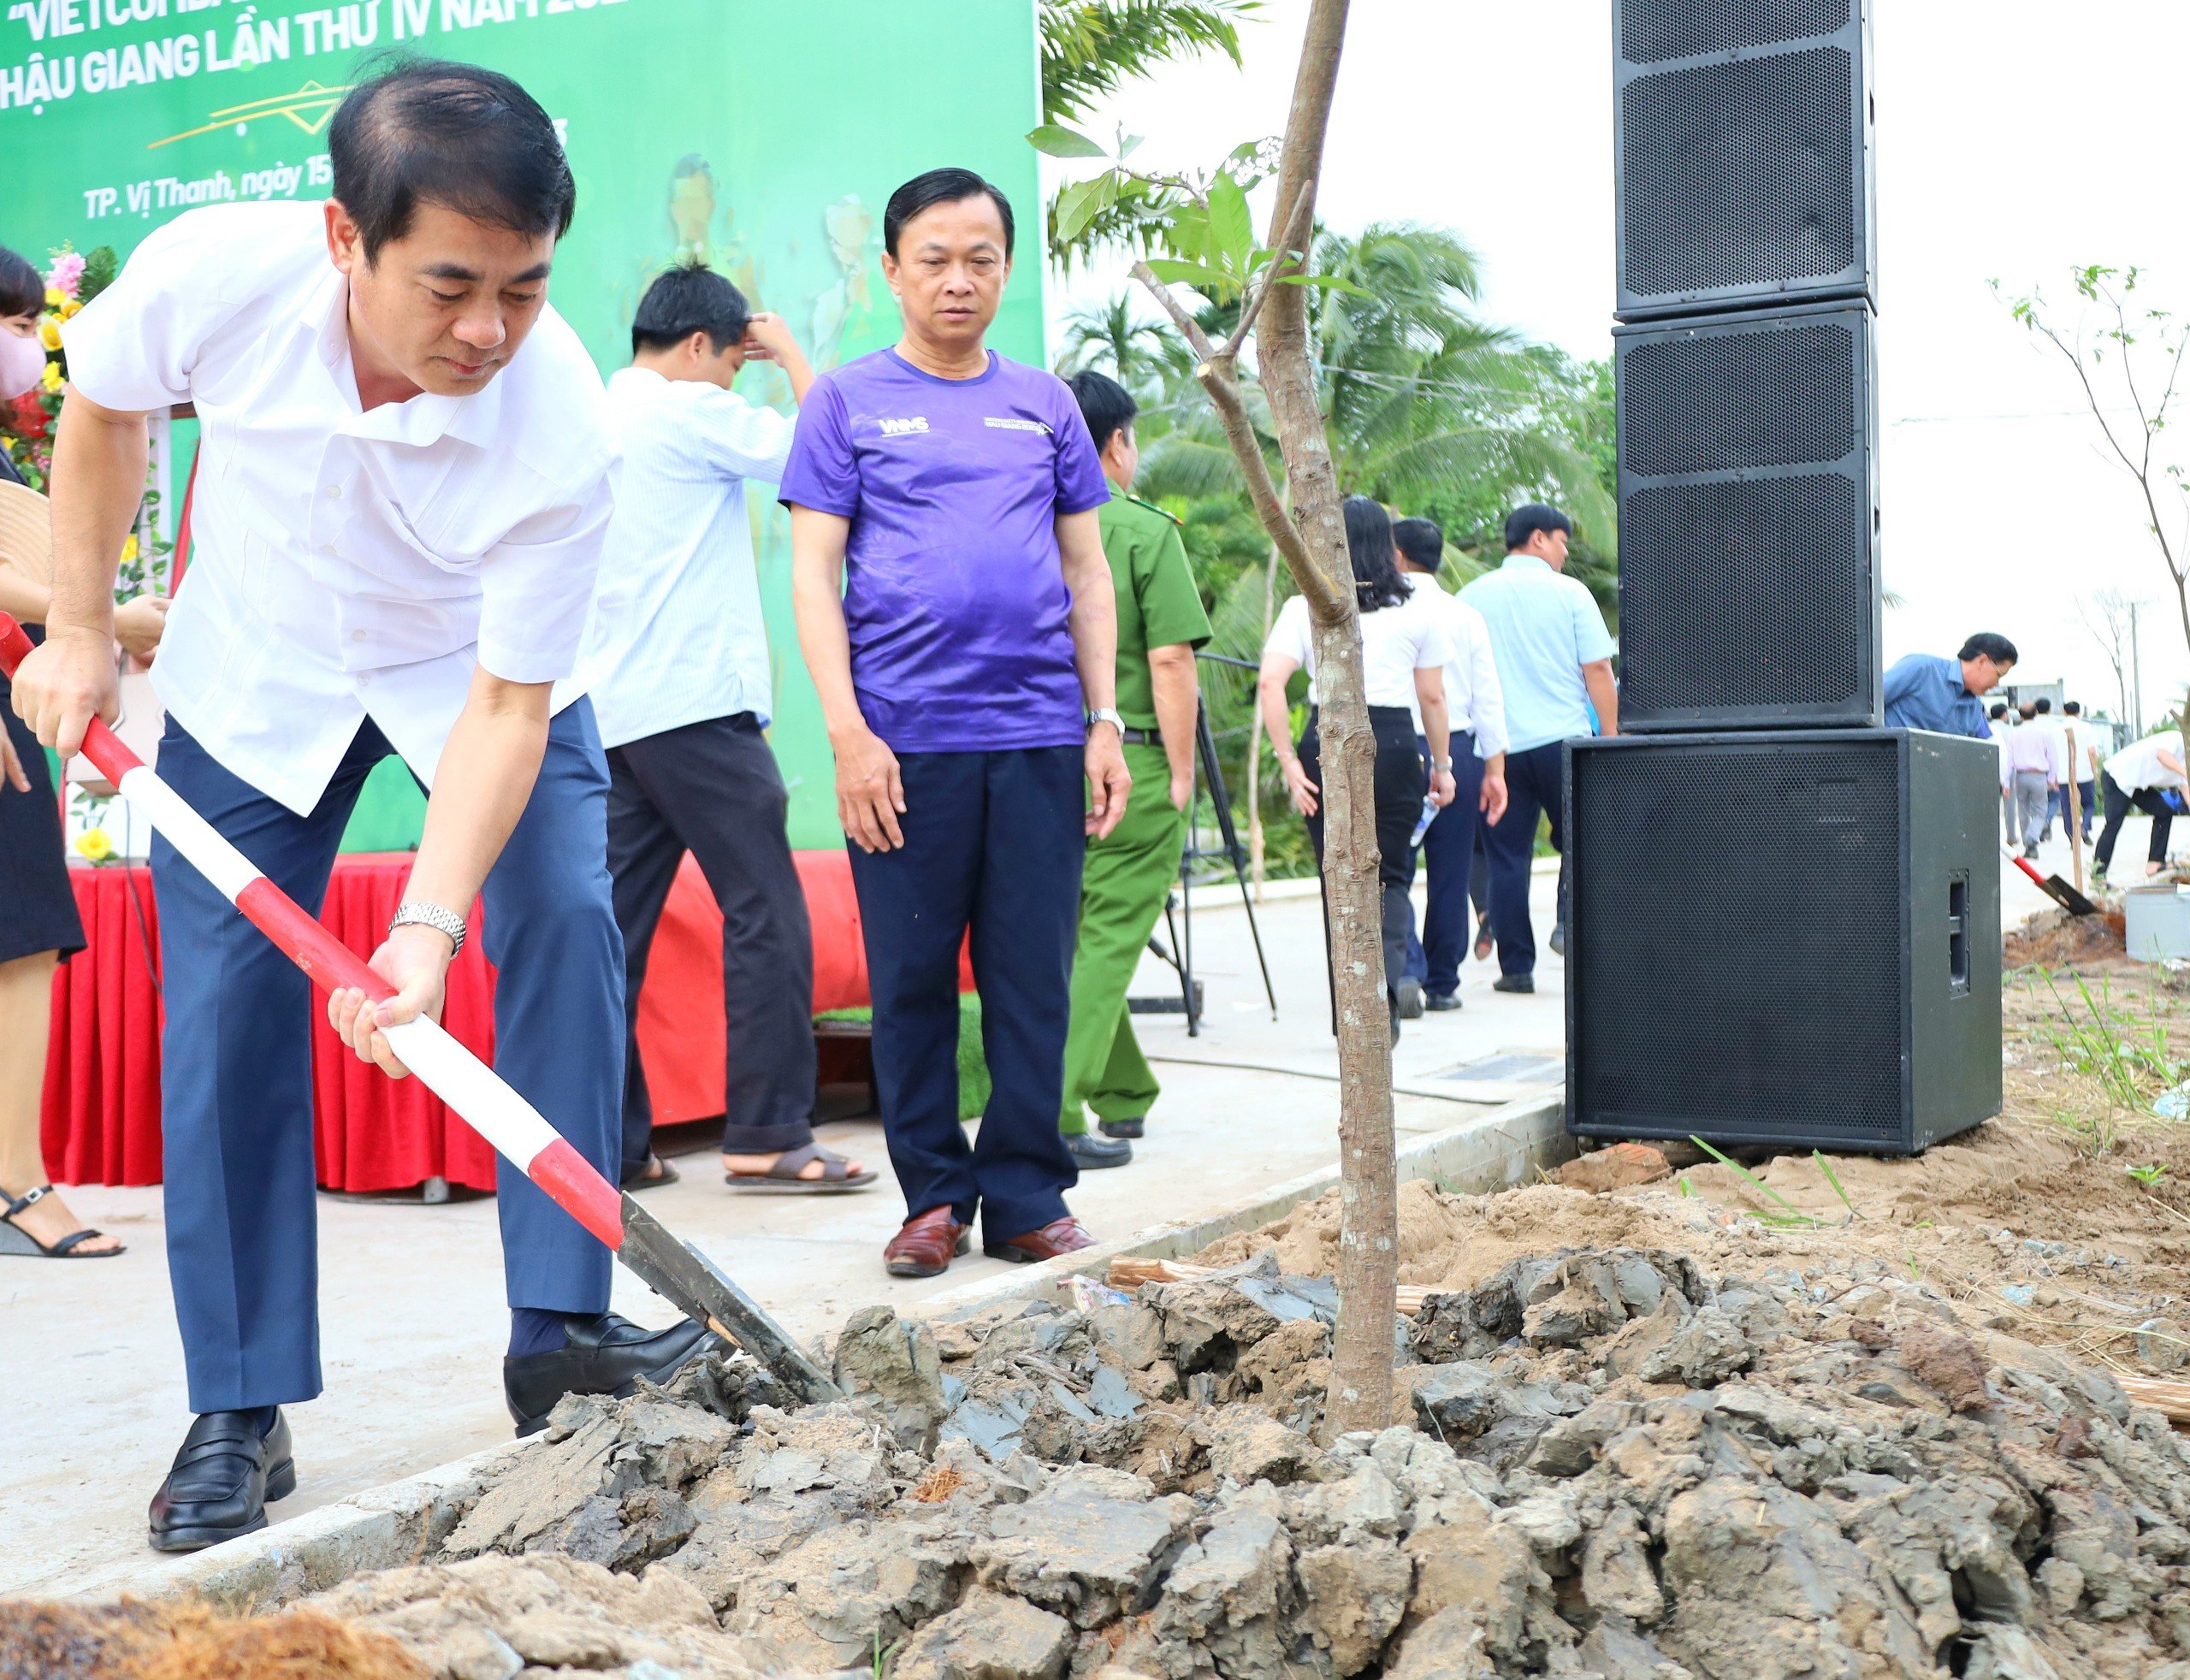 Ông Nghiêm Xuân Thành - Ủy viên BCH Trung ương Đảng, Bí thư Tỉnh ủy Hậu Giang tham gia trồng cây tại lễ phát động.